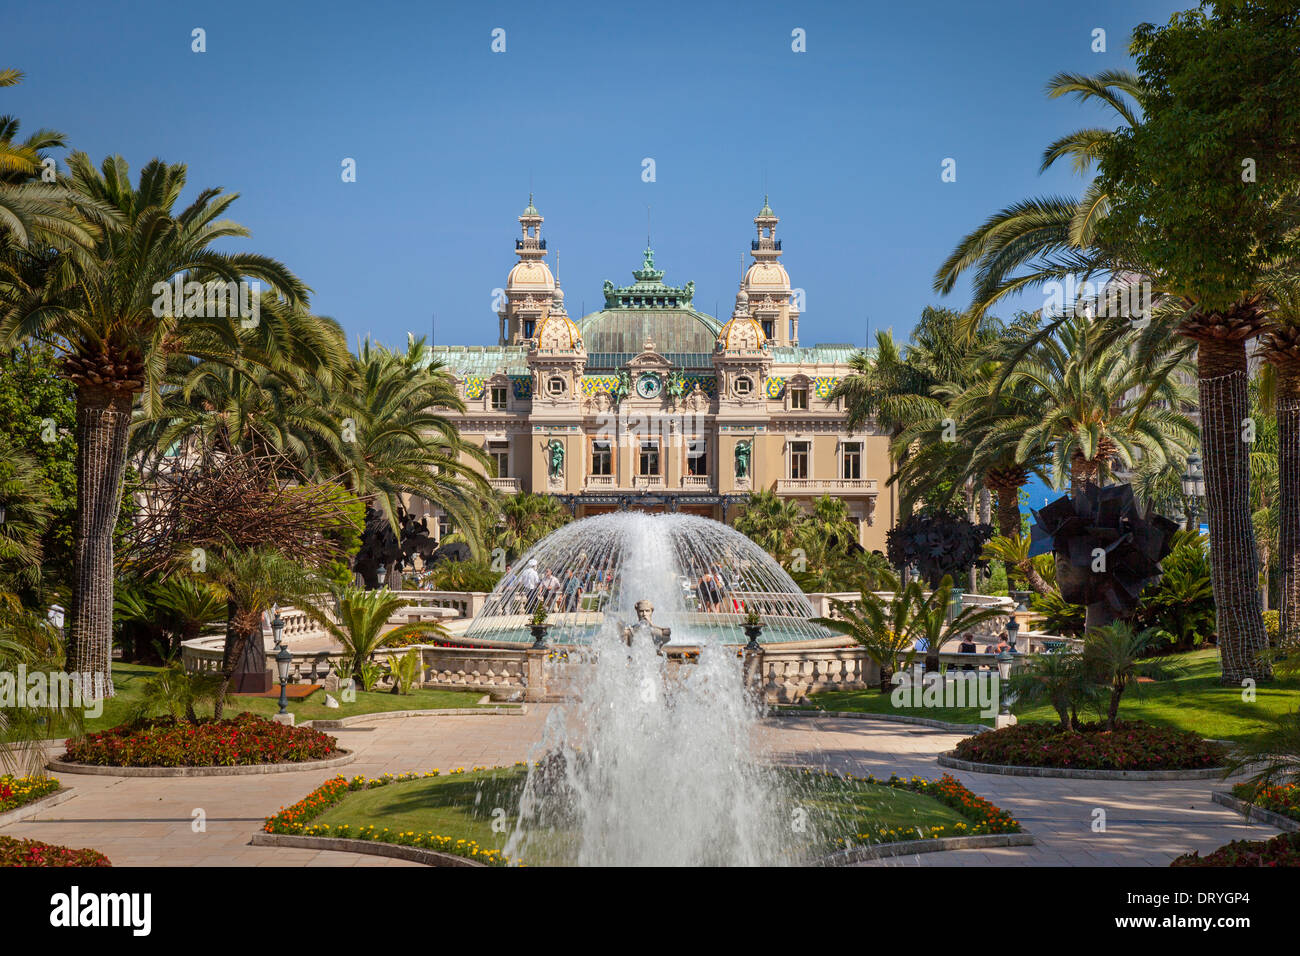 Monte Carlo Casino and garden, Monaco Stock Photo